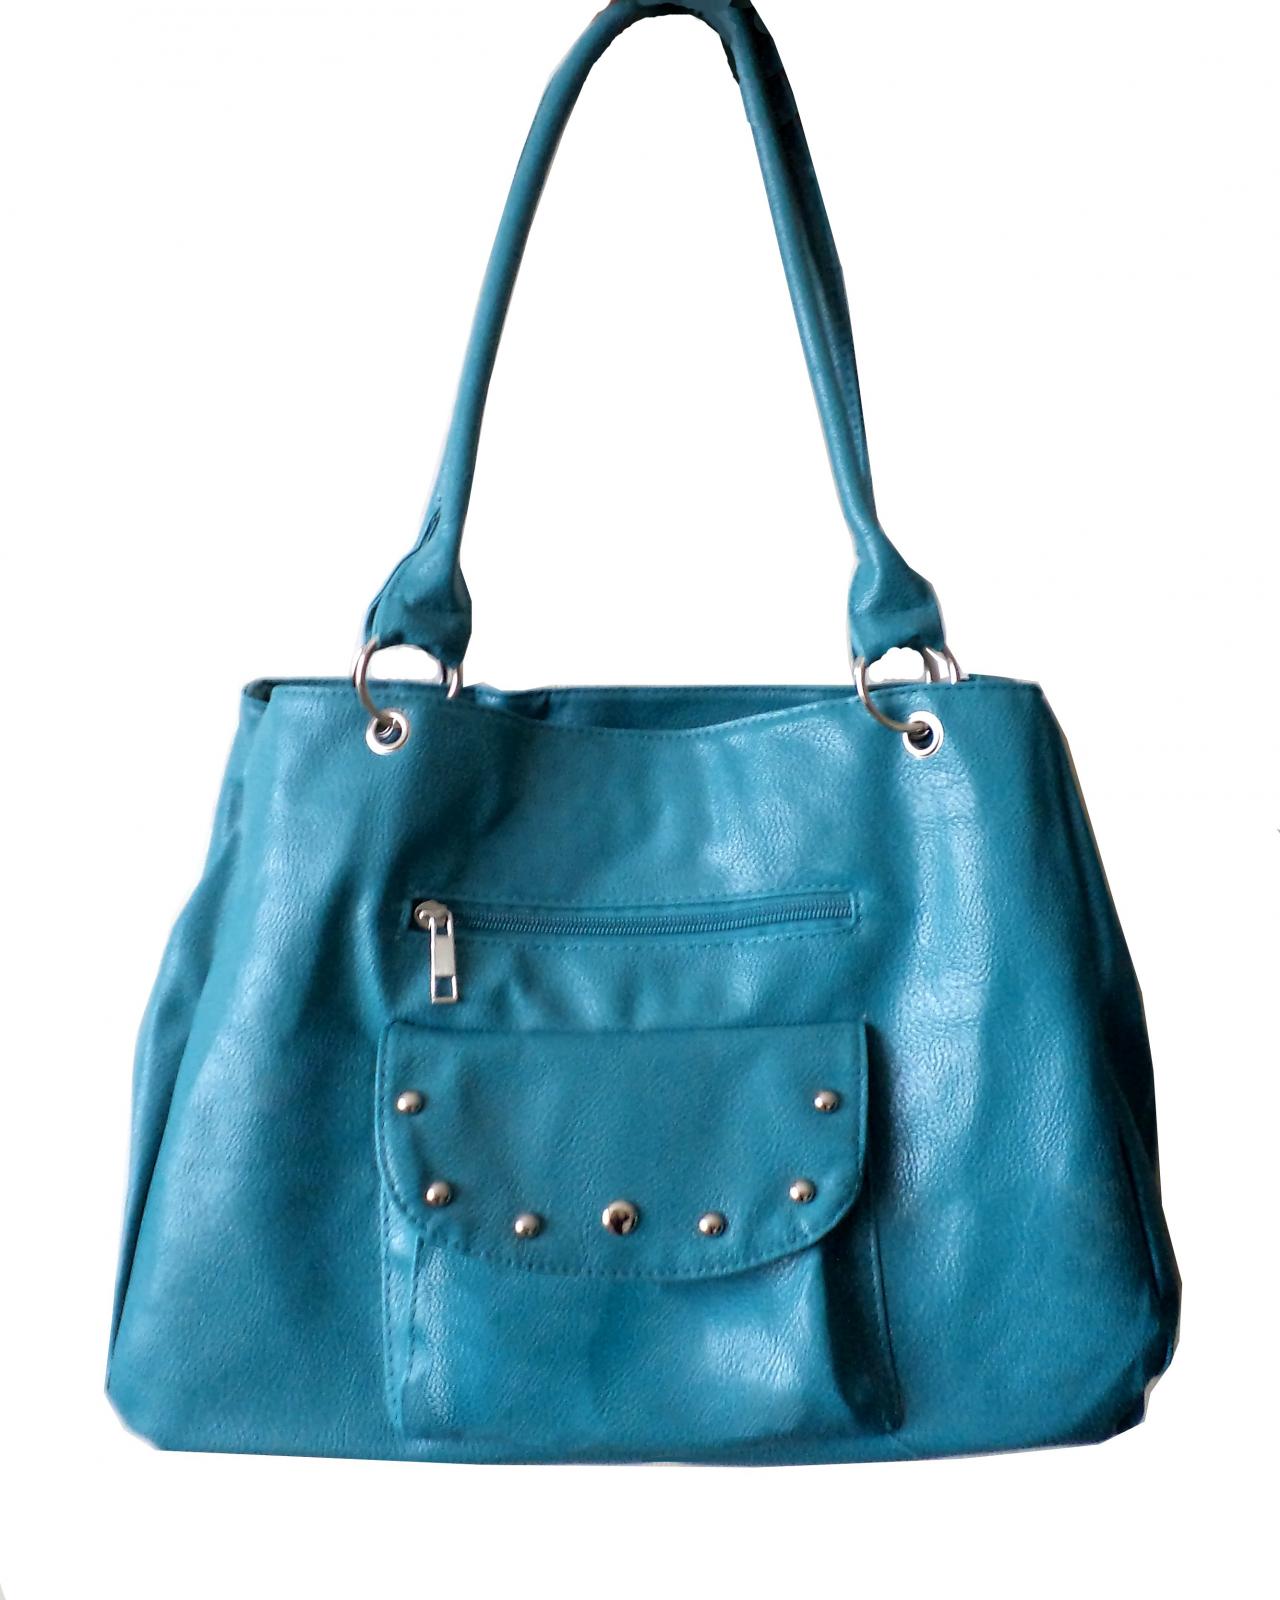 Teal Blue Leatherette Handbag, Purse, Hobo